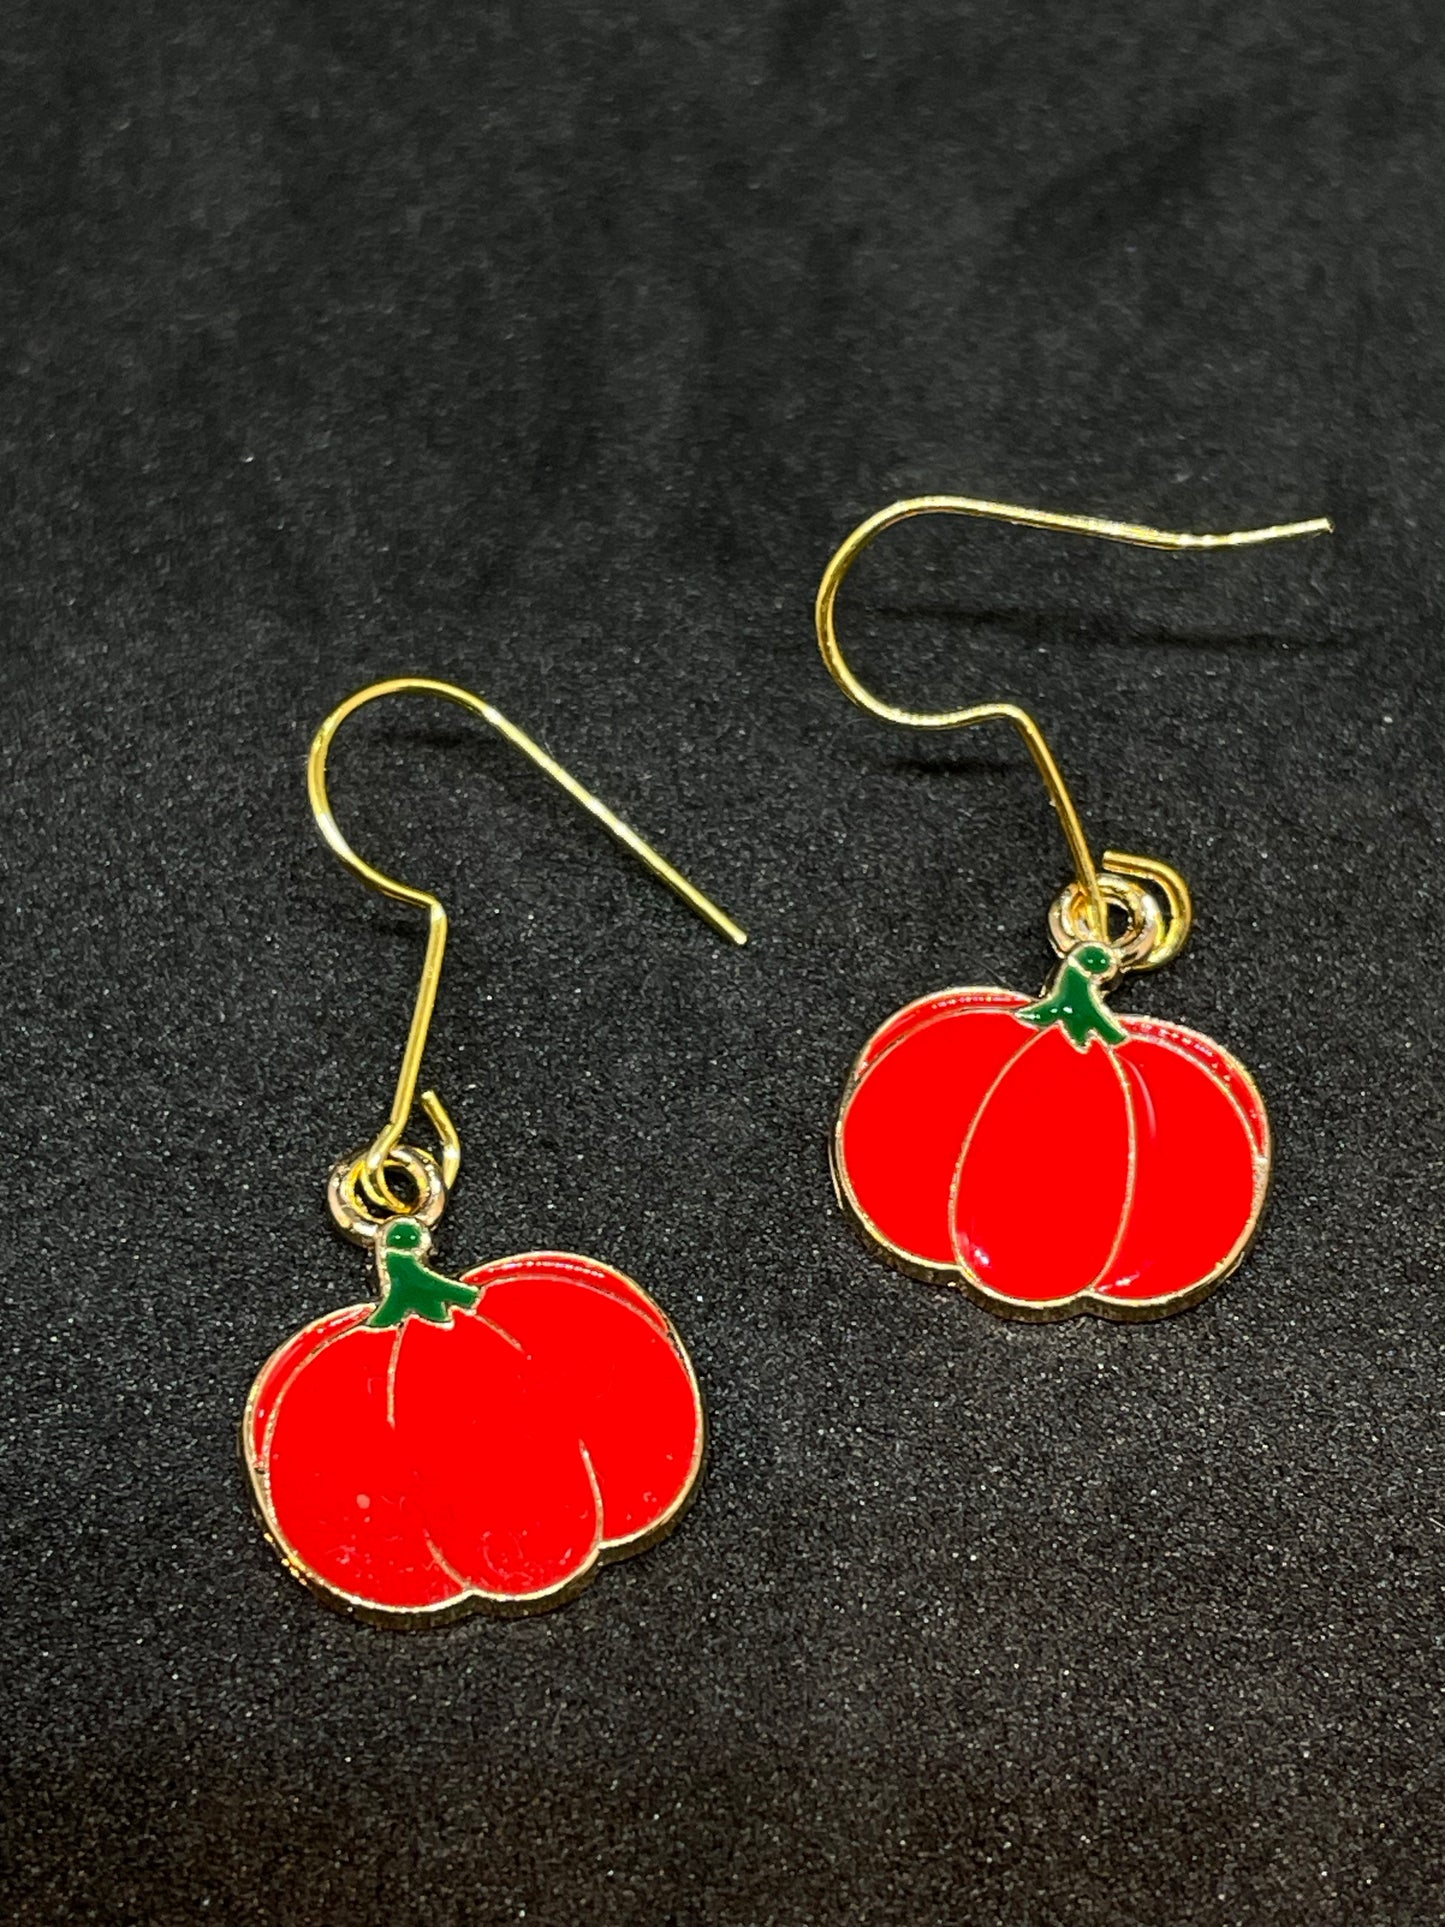 Pumpkin charm drop earrings with gold hooks